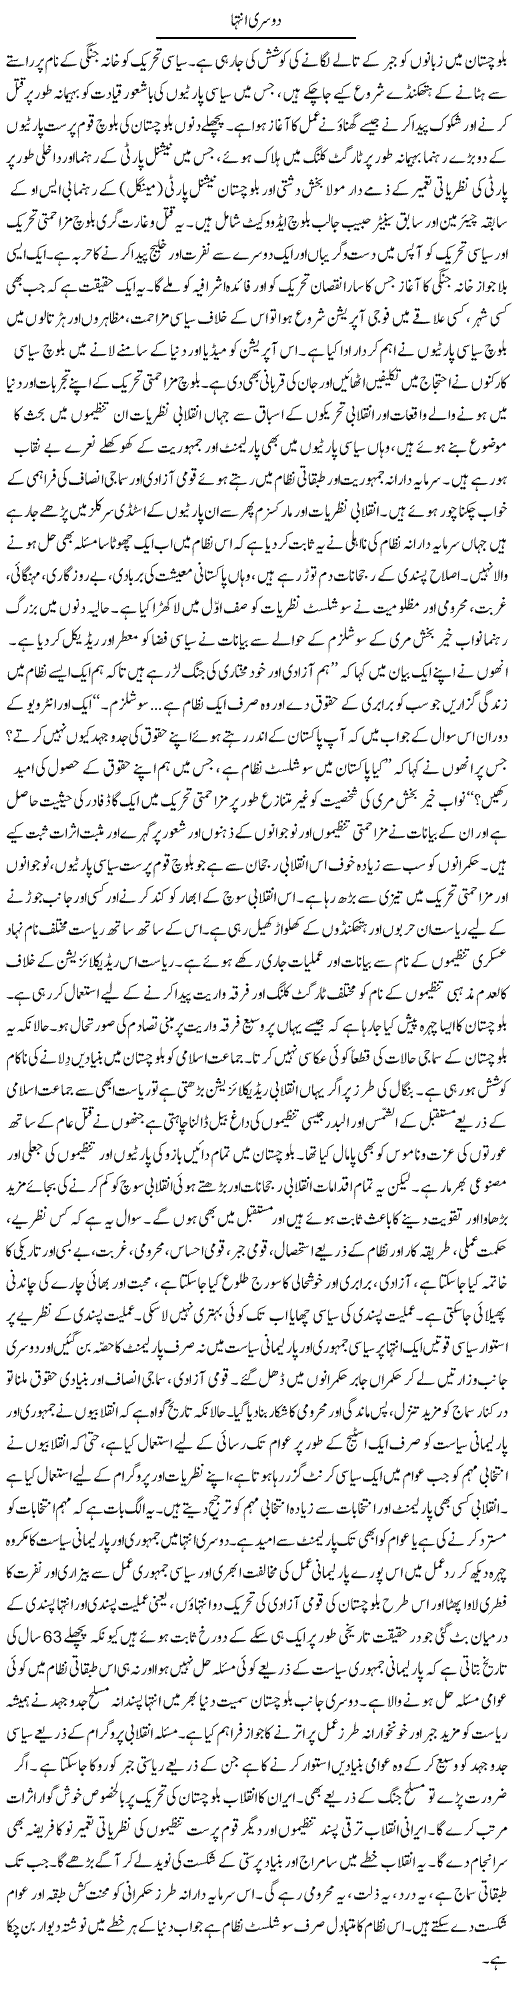 Dosri Intaha Express Column Zubair Rehman 4 August 2010